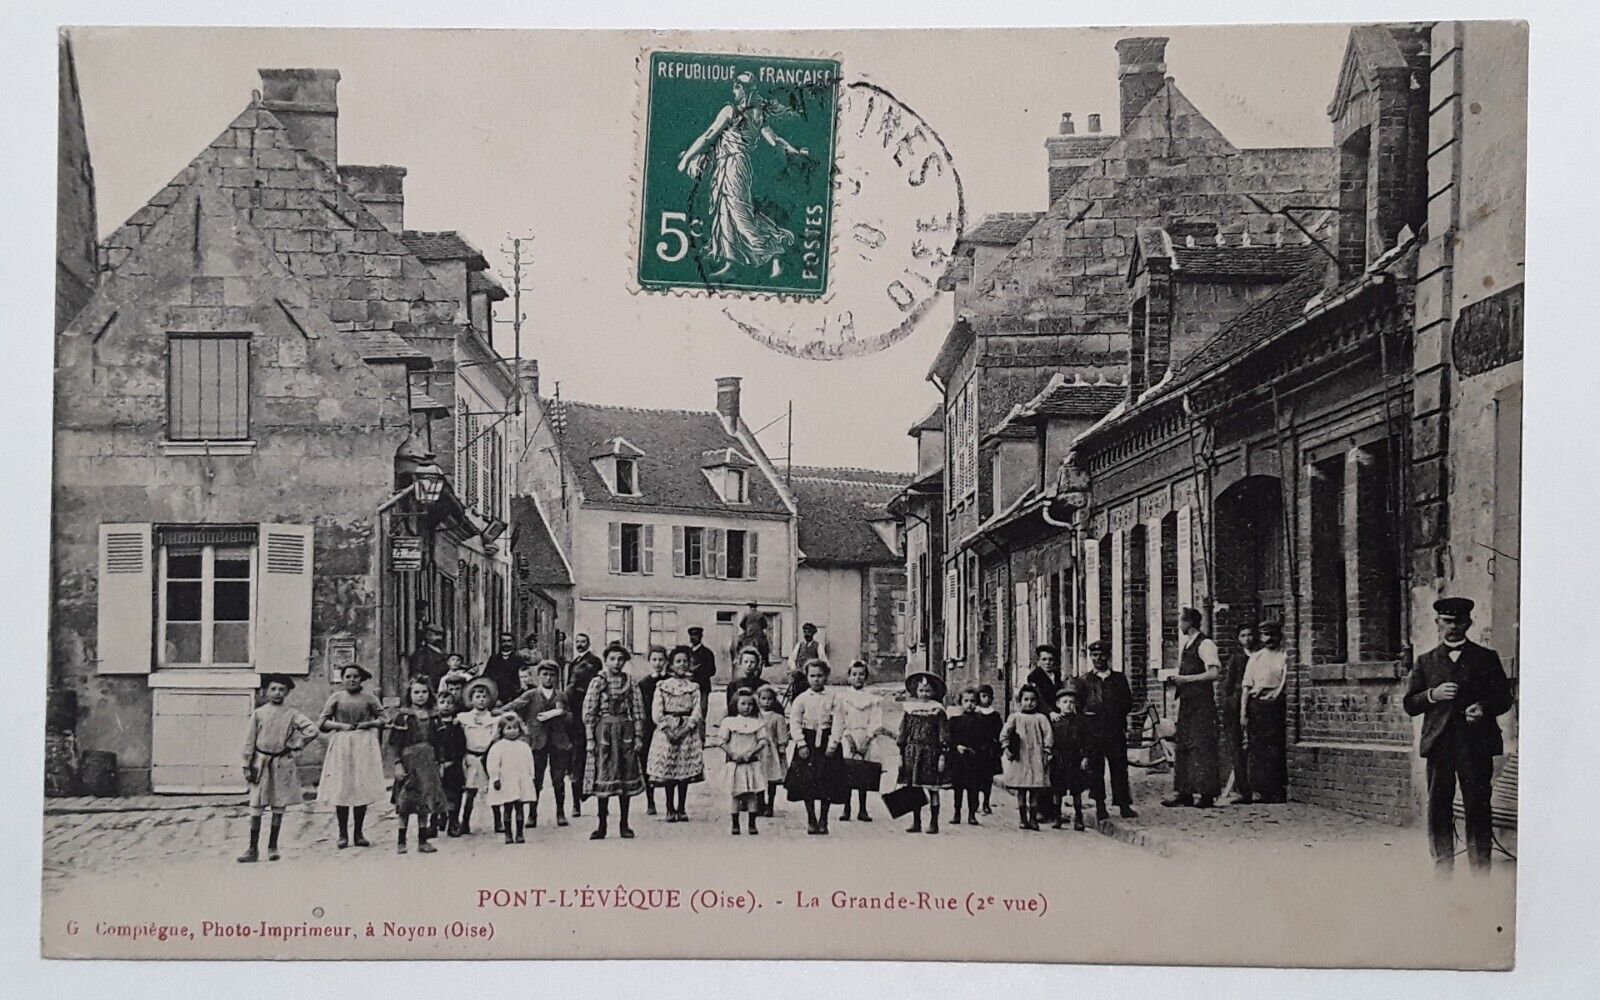 cpa-60-Oise-PONT-L\'ÉVÈQUE-La Grande-Rue-voyaged,very good condition. 